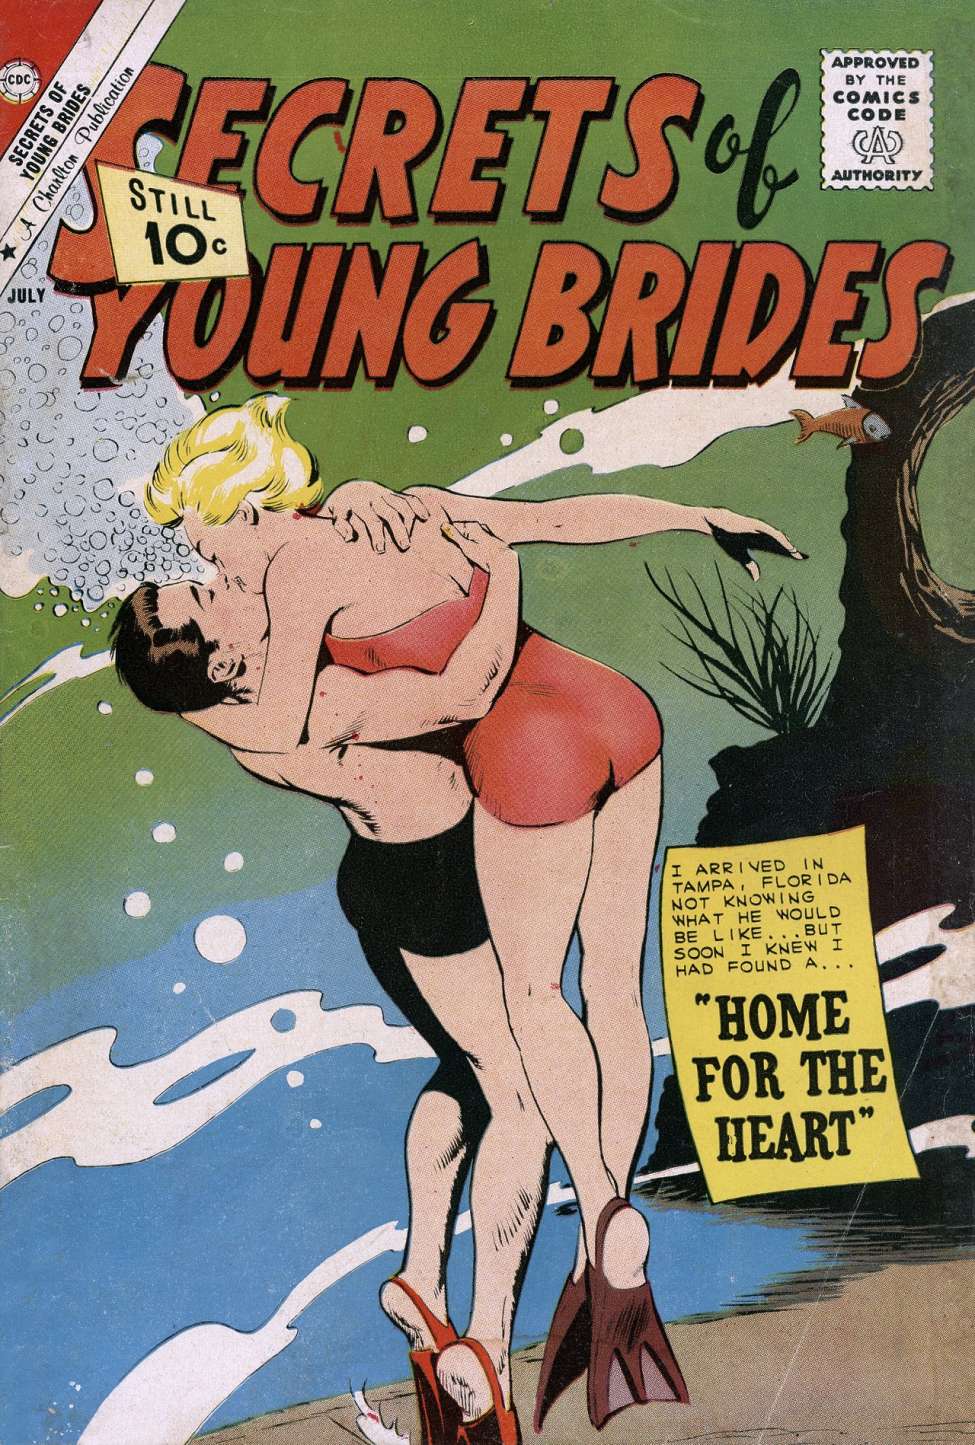 975px x 1445px - 1940 Vintage Porn Comics | Sex Pictures Pass